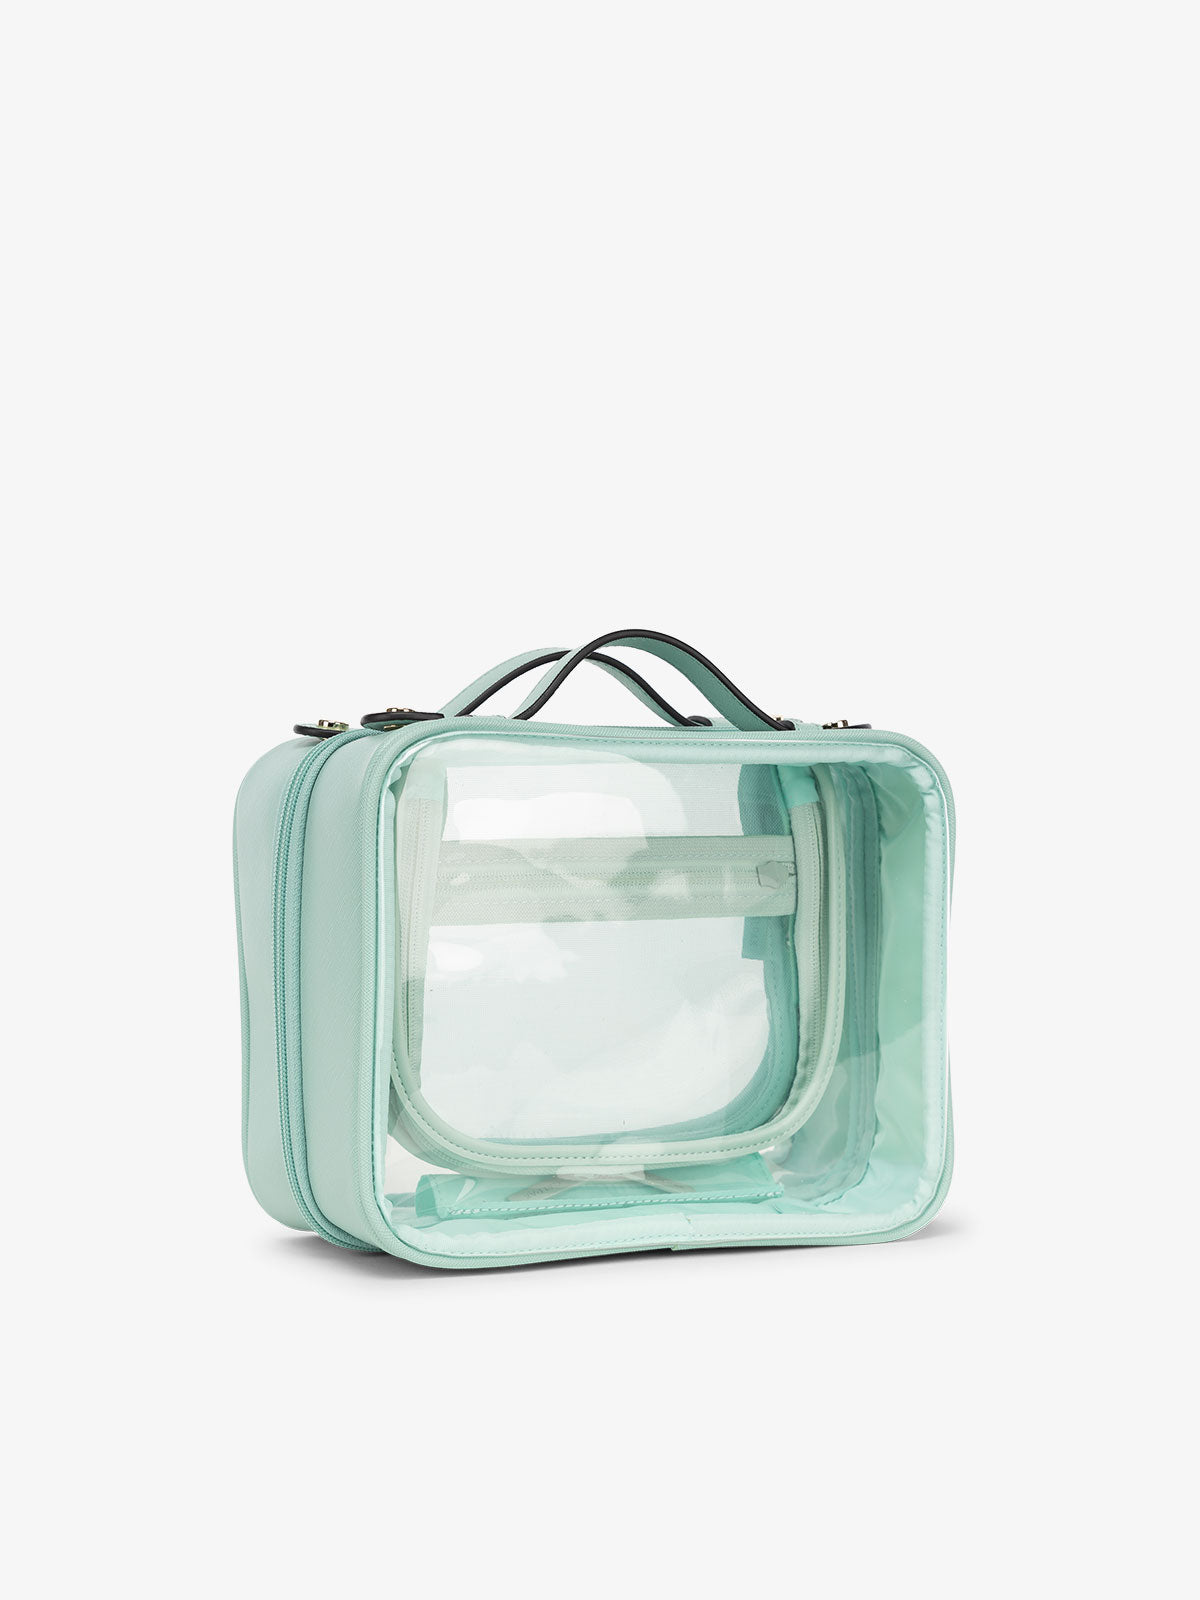 CALPAK clear makeup bag for women in aqua blue